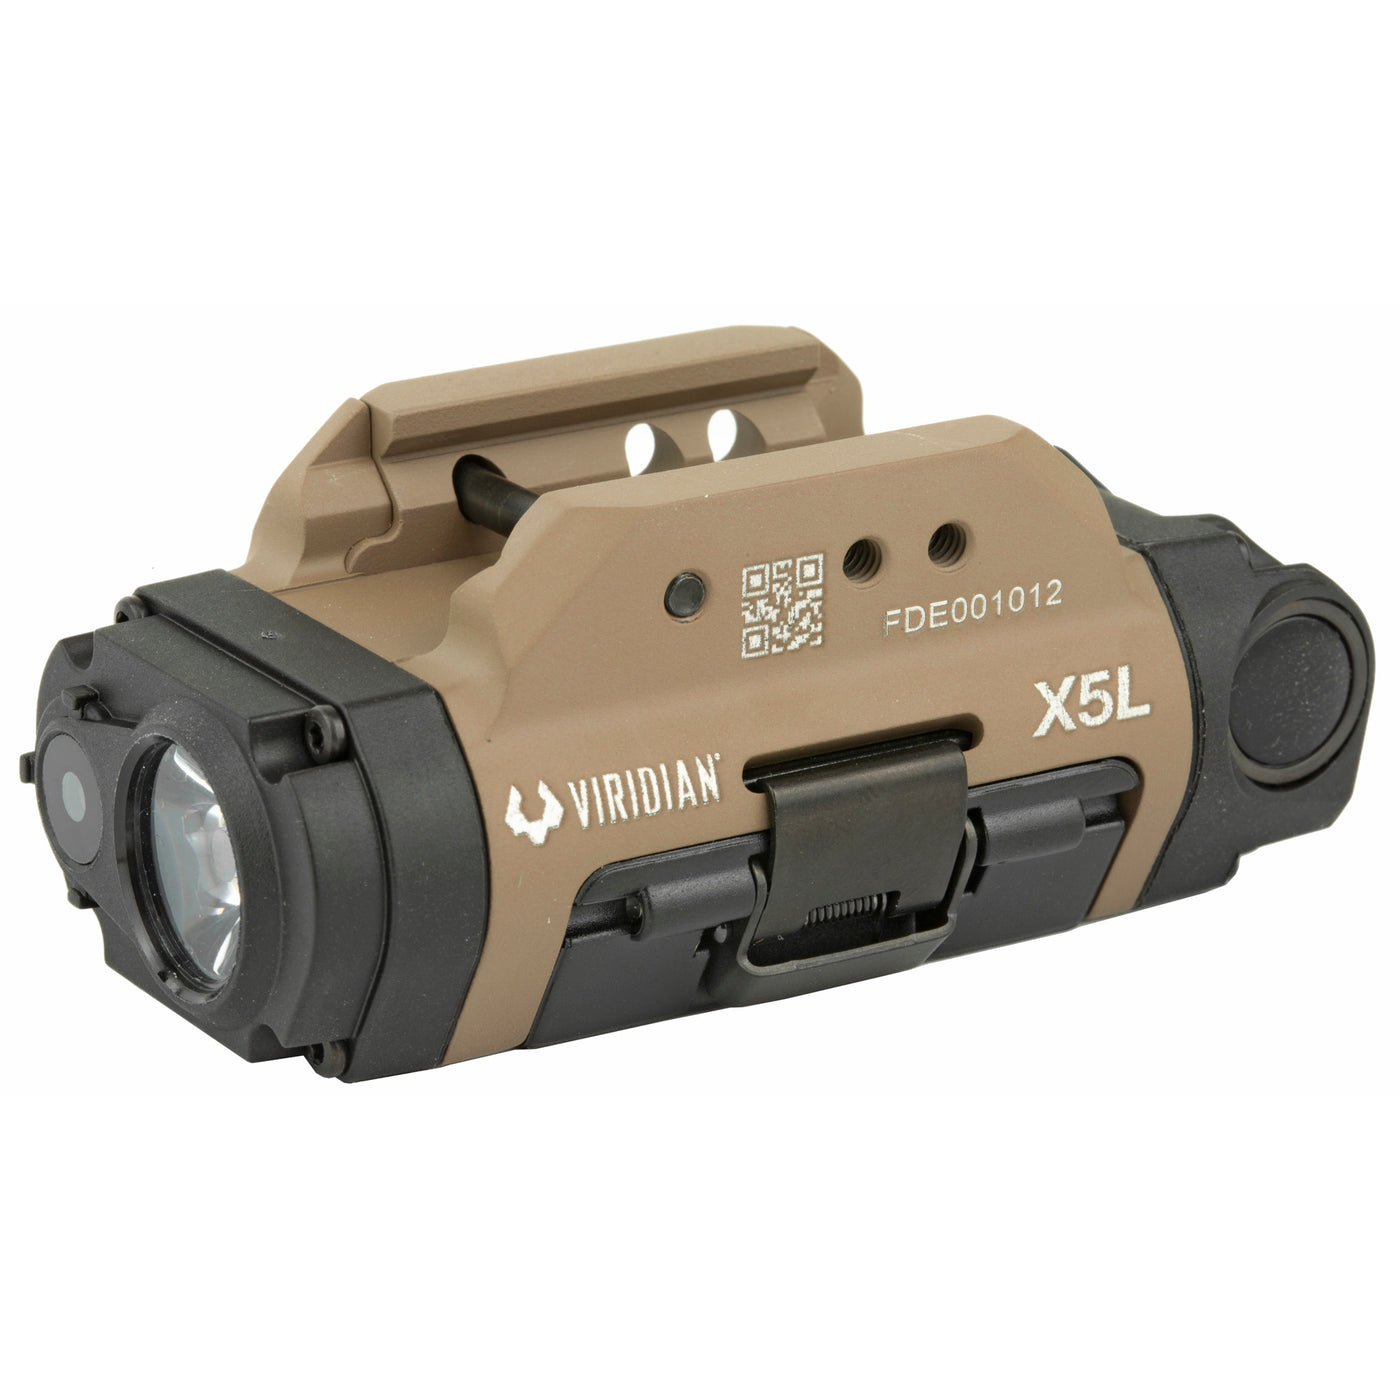 Viridian Laser/light X5l Green - Gen3 Uni Rail Mount Ecr Fde